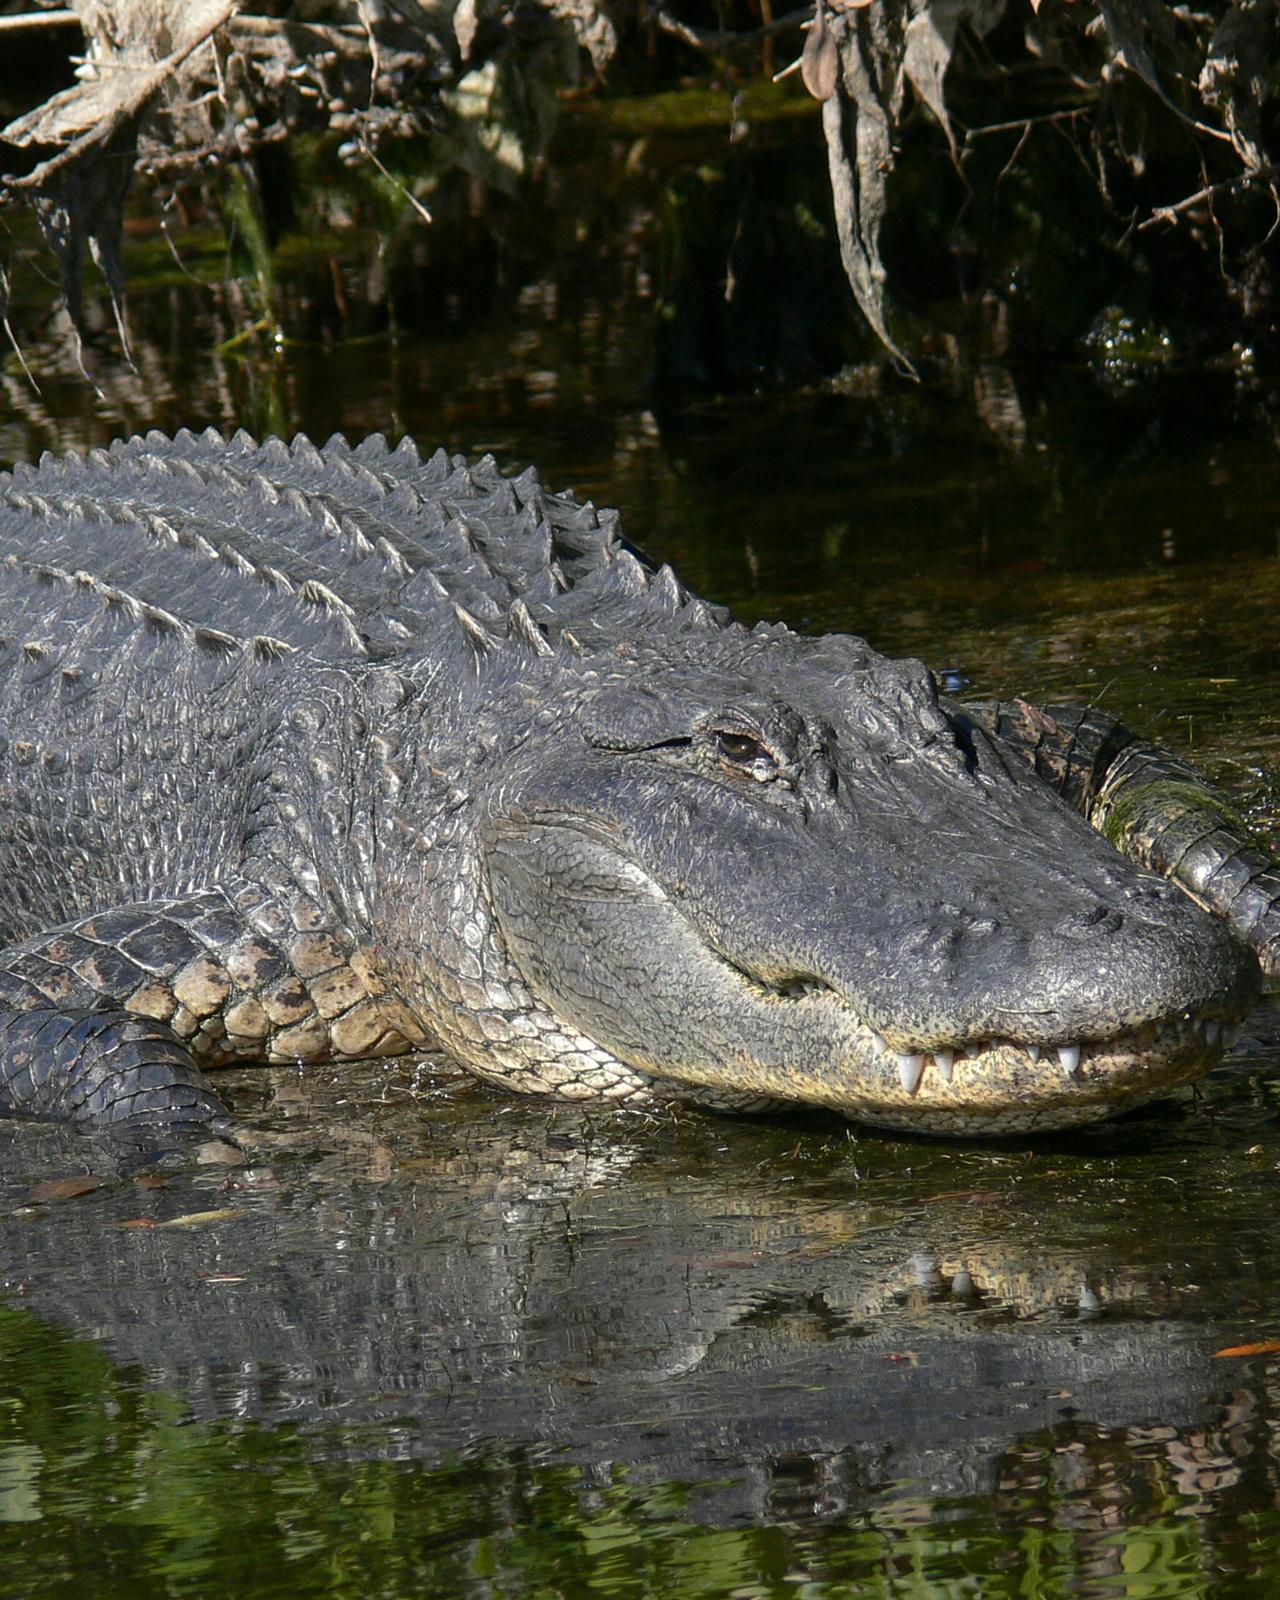 American Alligator Photo by Knut Hansen